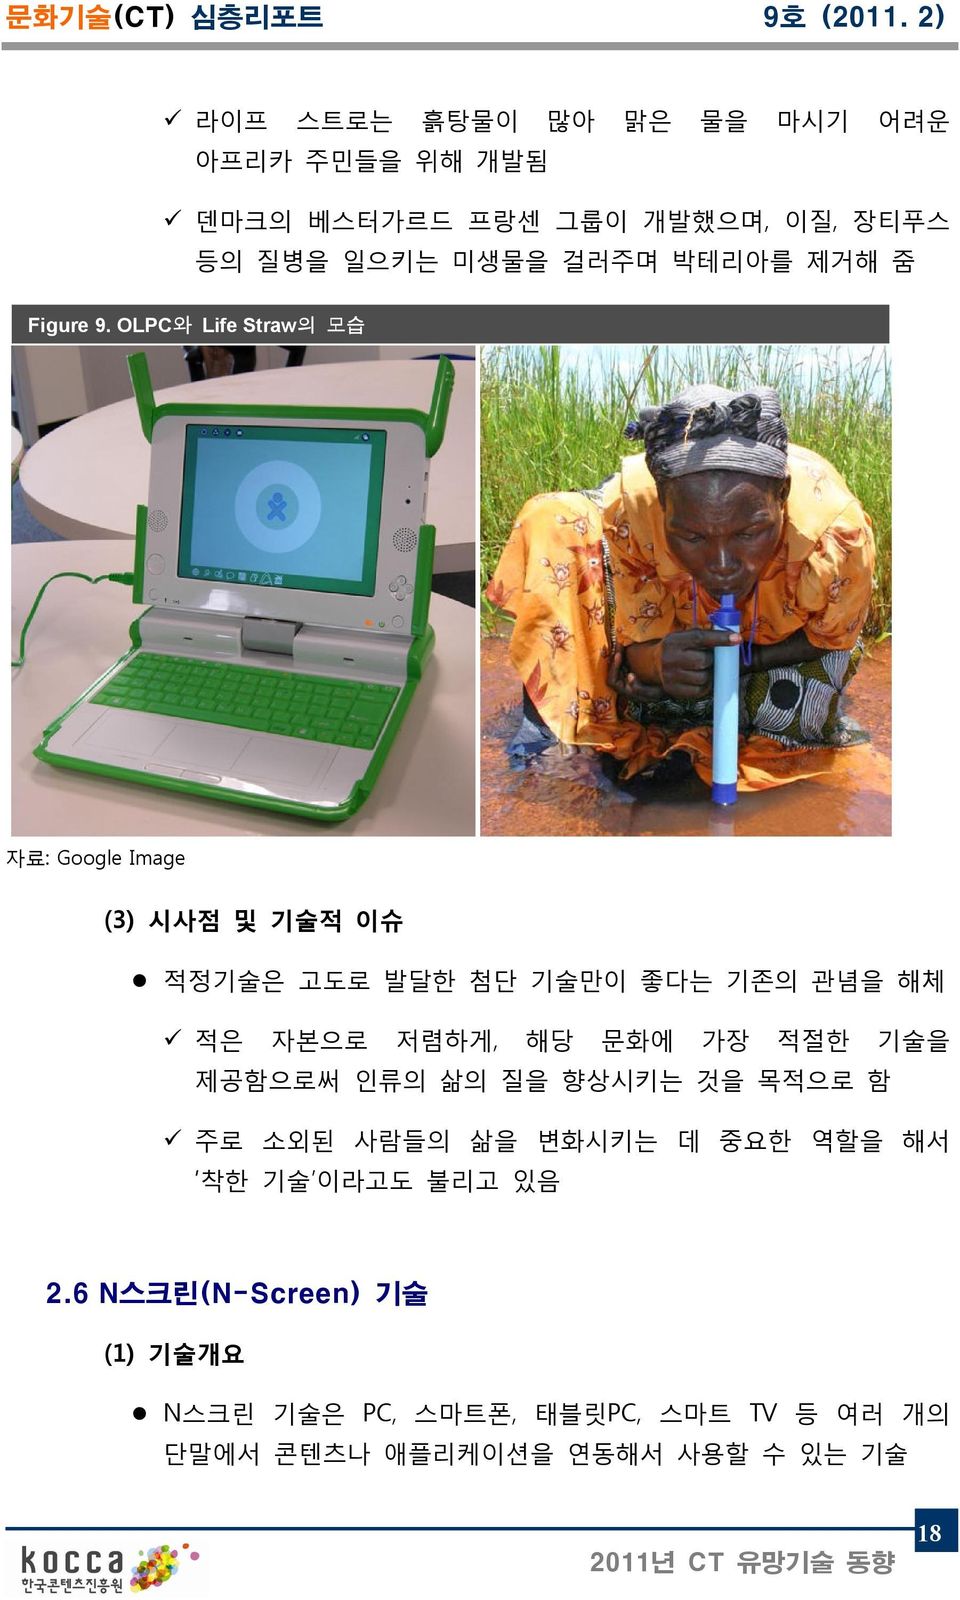 OLPC와 Life Straw의 모습 자료: Google Image (3) 시사점 및 기술적 이슈 적정기술은 고도로 발달한 첨단 기술만이 좋다는 기존의 관념을 해체 적은 자본으로 저렴하게, 해당